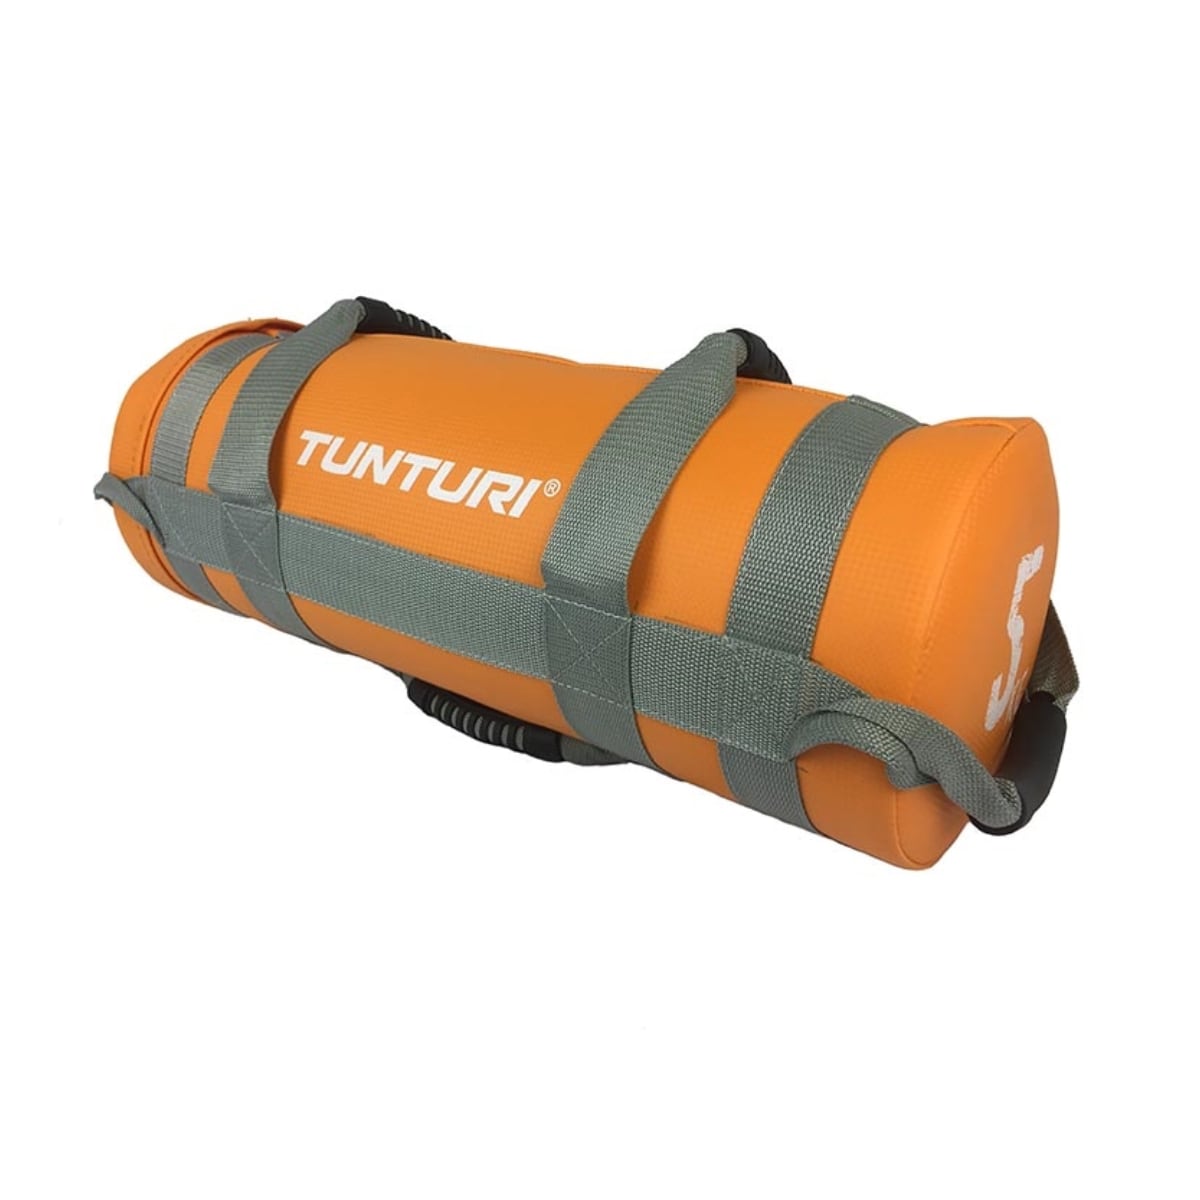 Brug Tunturi Power Strength Bag 5 kg til en forbedret oplevelse